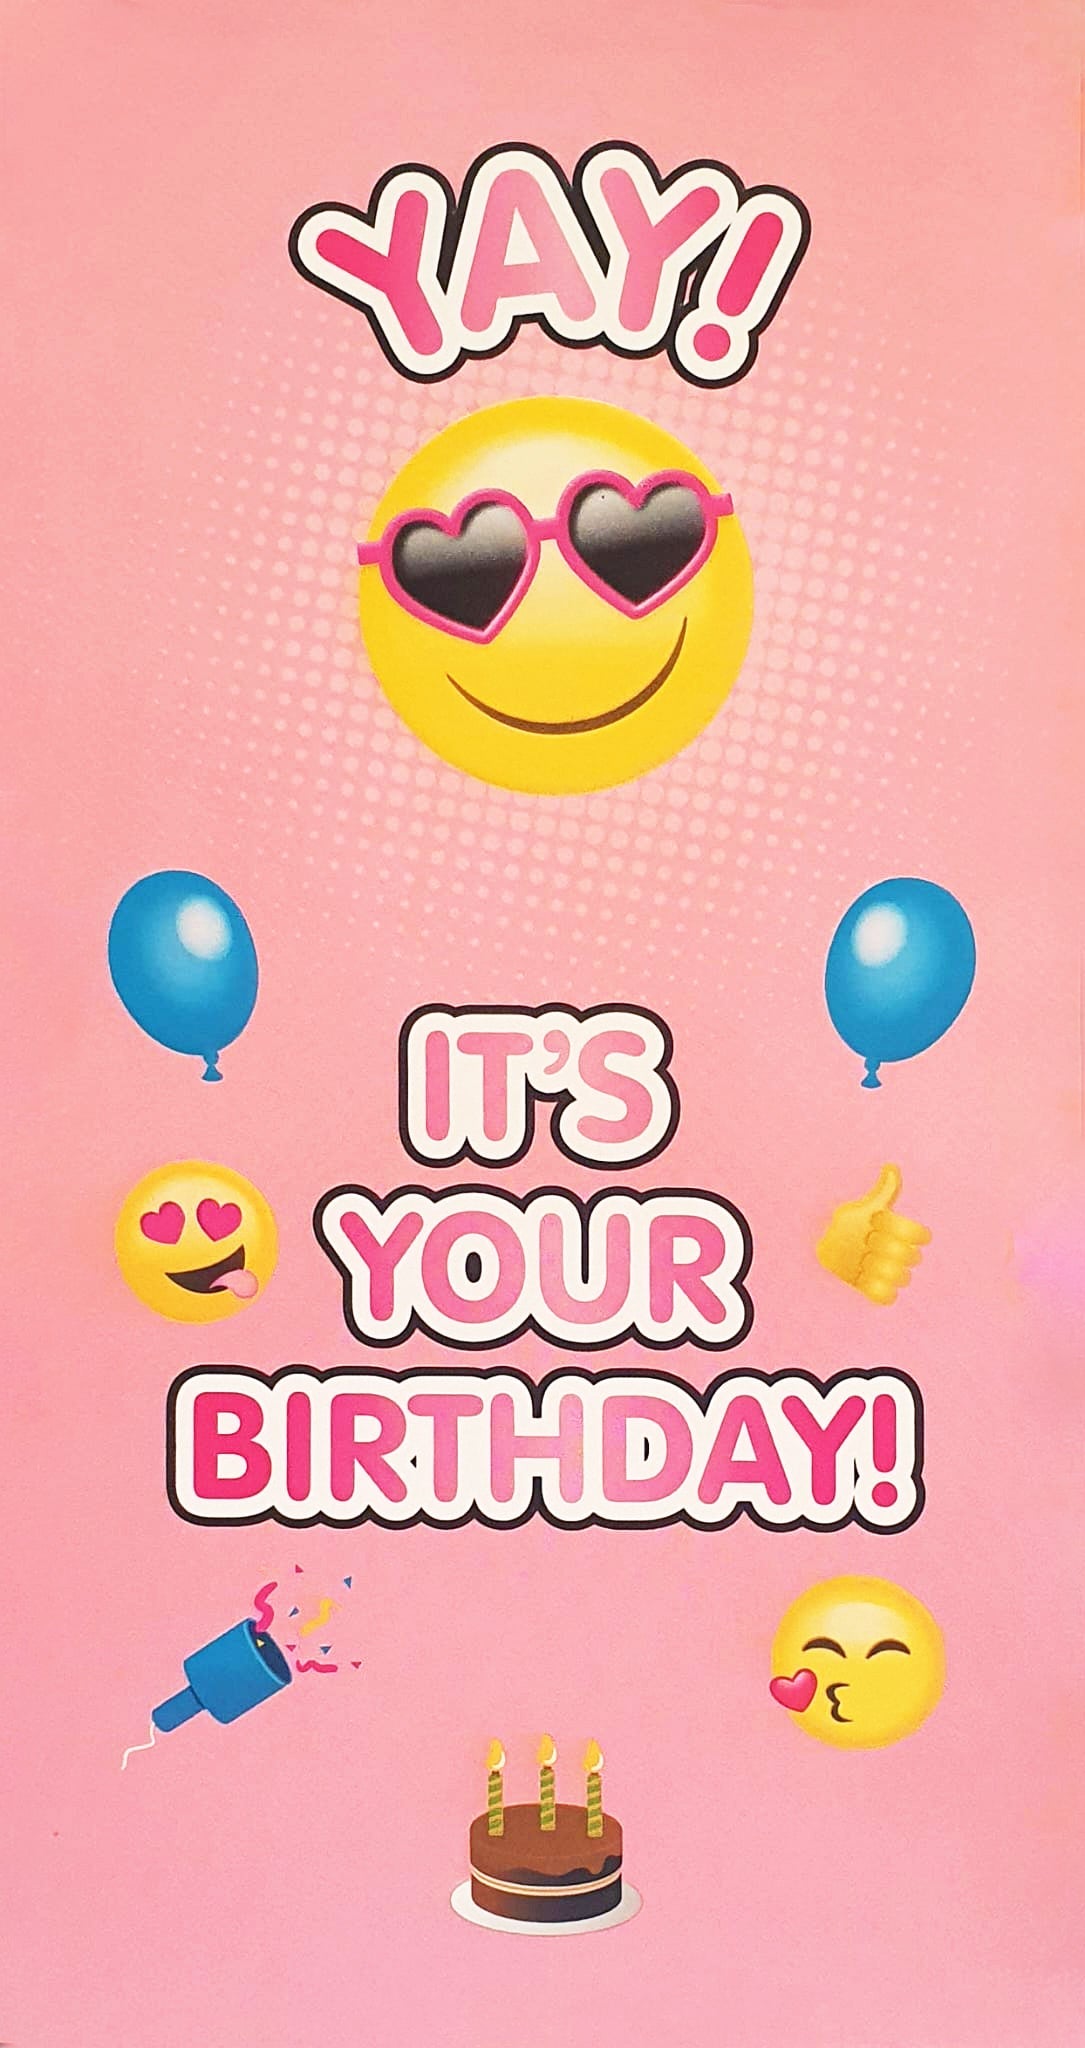 Girl Juvenile Birthday Card - To The "Princess" Of Emojis